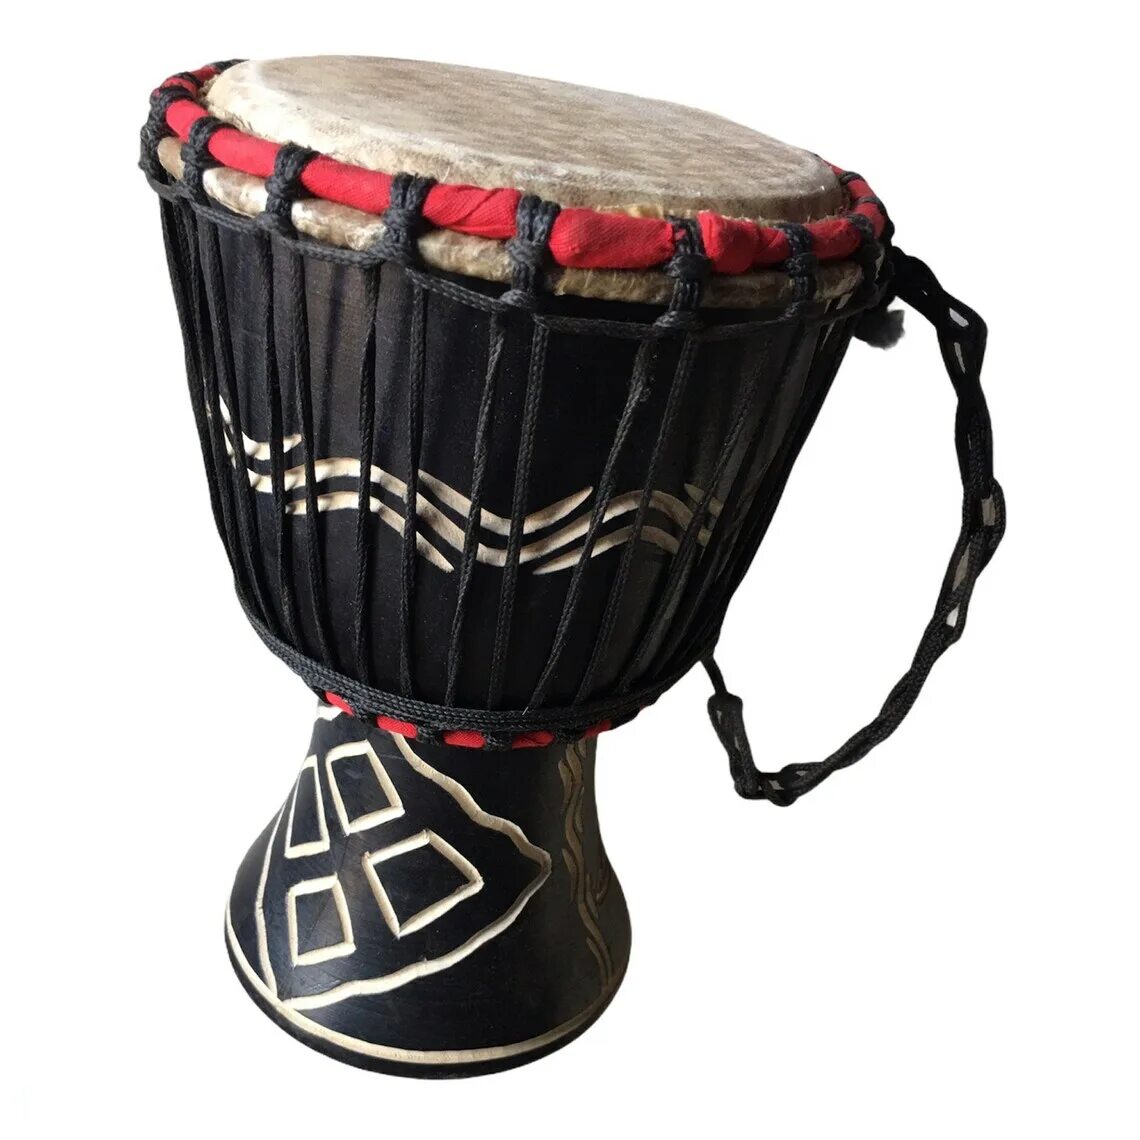 Музыка африканские барабаны. Африканский барабан джембе. Африка барабан джембе. Музыкальные инструменты Африки барабаны. Африканский барабан название.